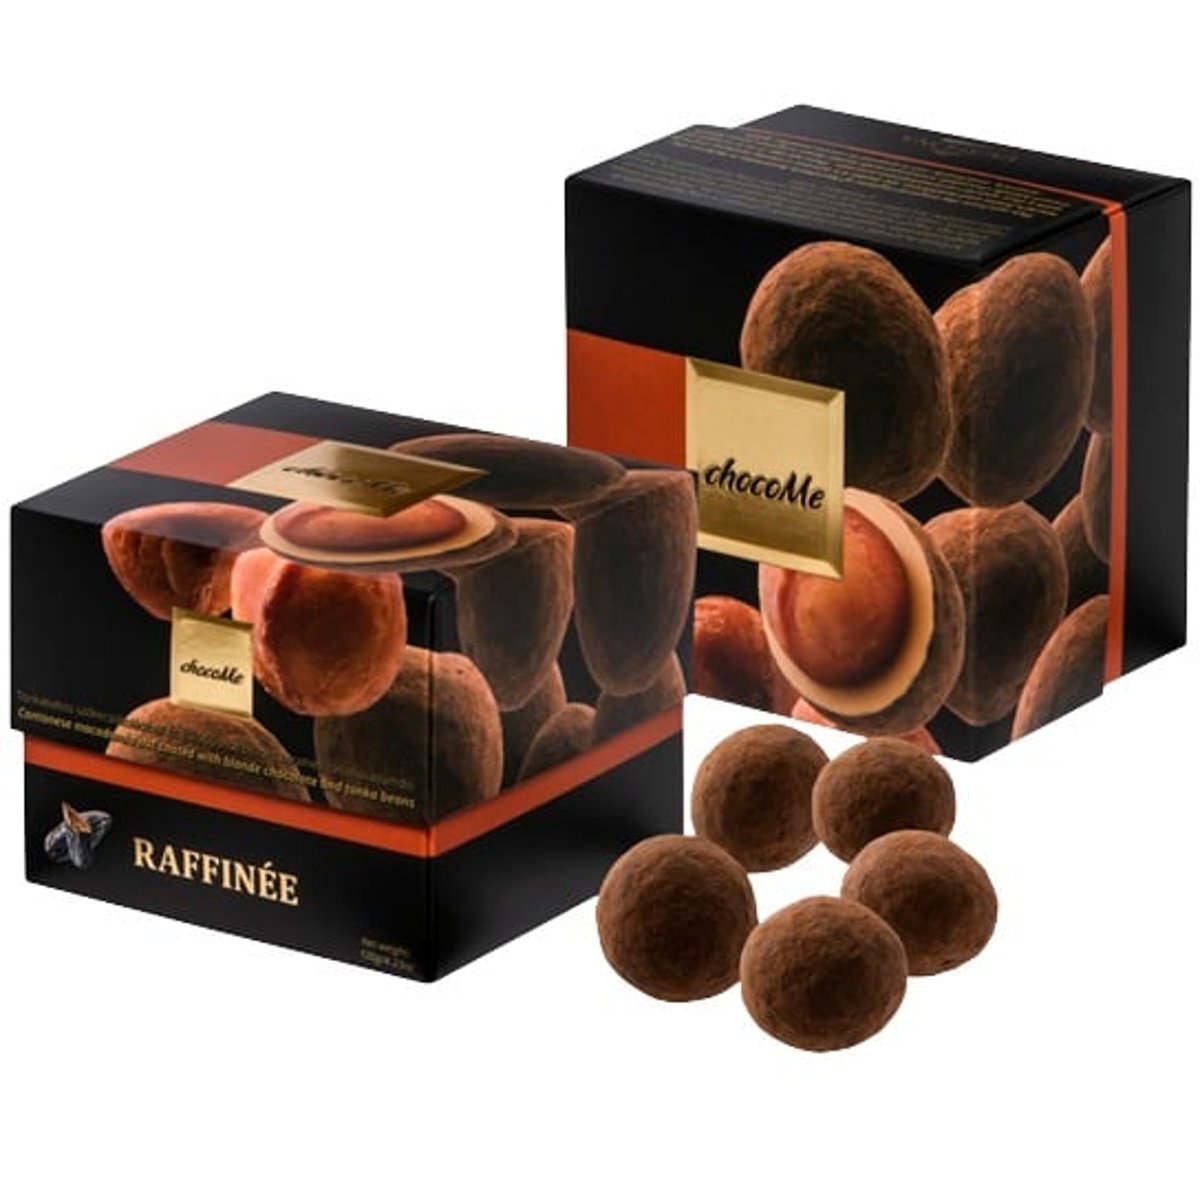 chocoMe Raffinée kantonské makadamové ořechy v blond čokoládě a bobech tonka